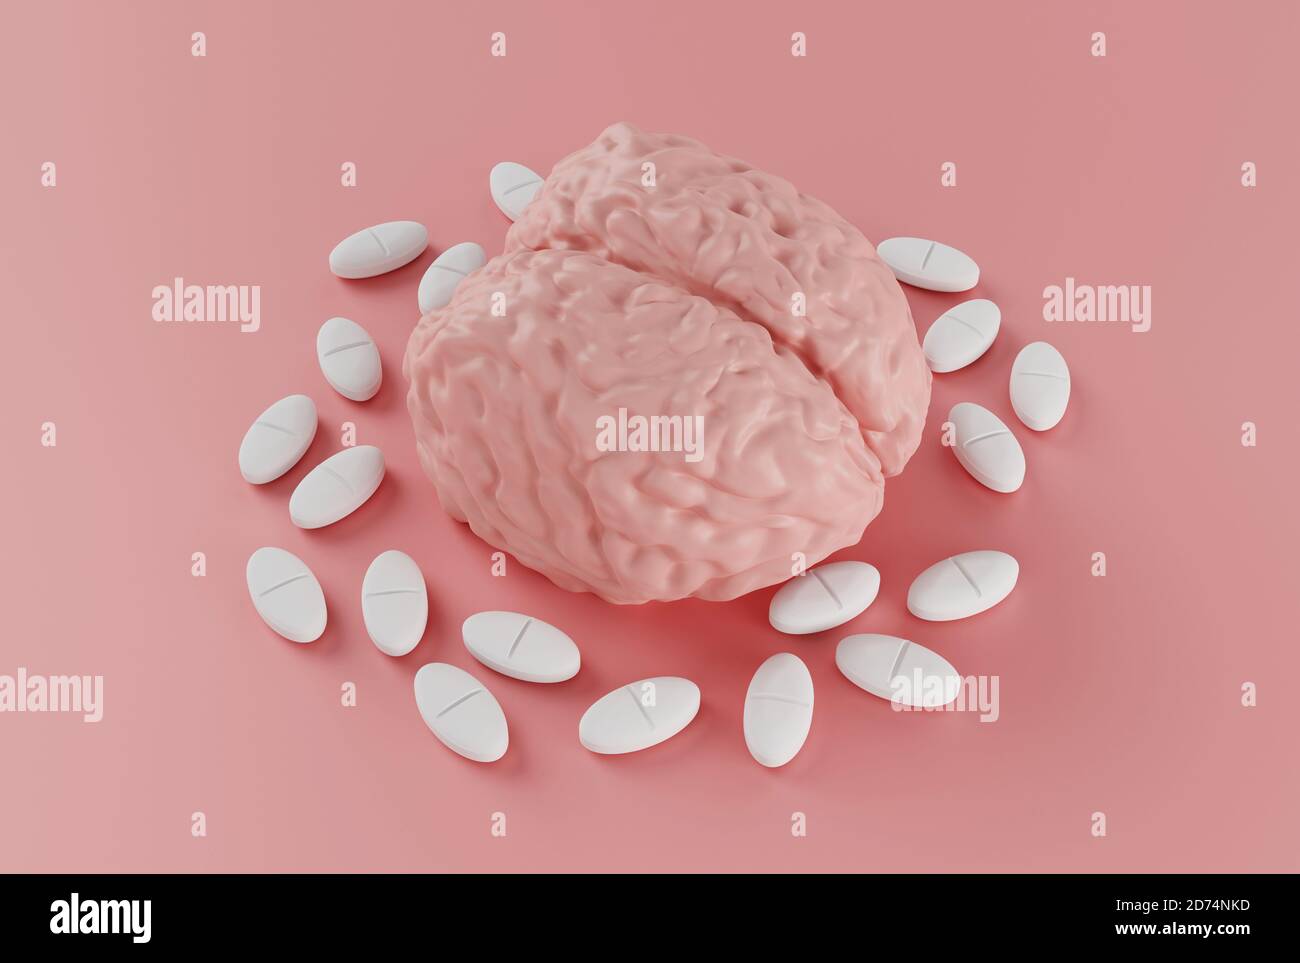 cervello umano circondato da pillole su sfondo rosa, nootropico per il cervello o pillola di mal di testa, una droga per migliorare l'attività cerebrale, pillola dipendenza, 3d Foto Stock